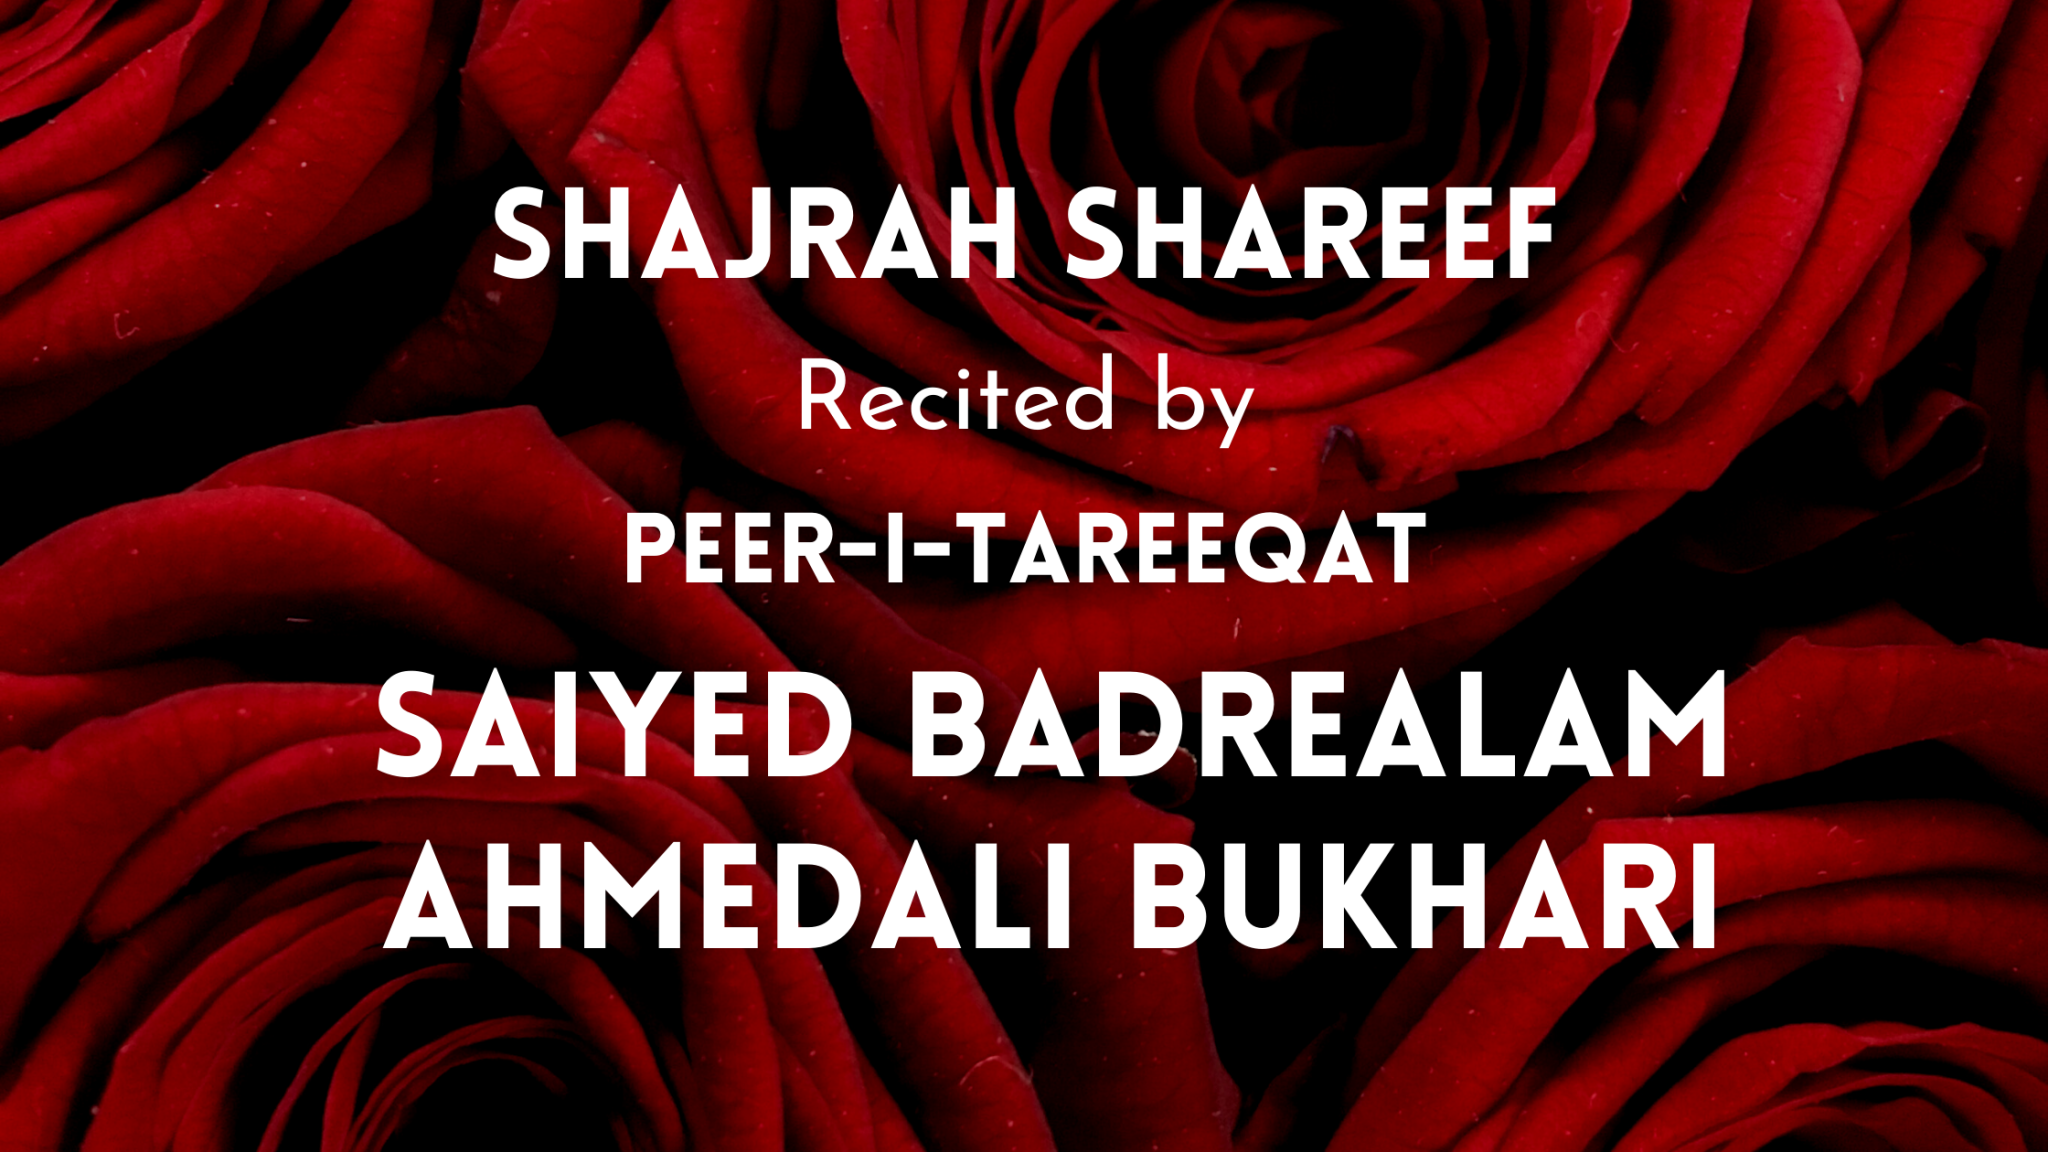 Shajrah Shareef recited by Peer Saiyed BadreAlam Bukhari Sahab